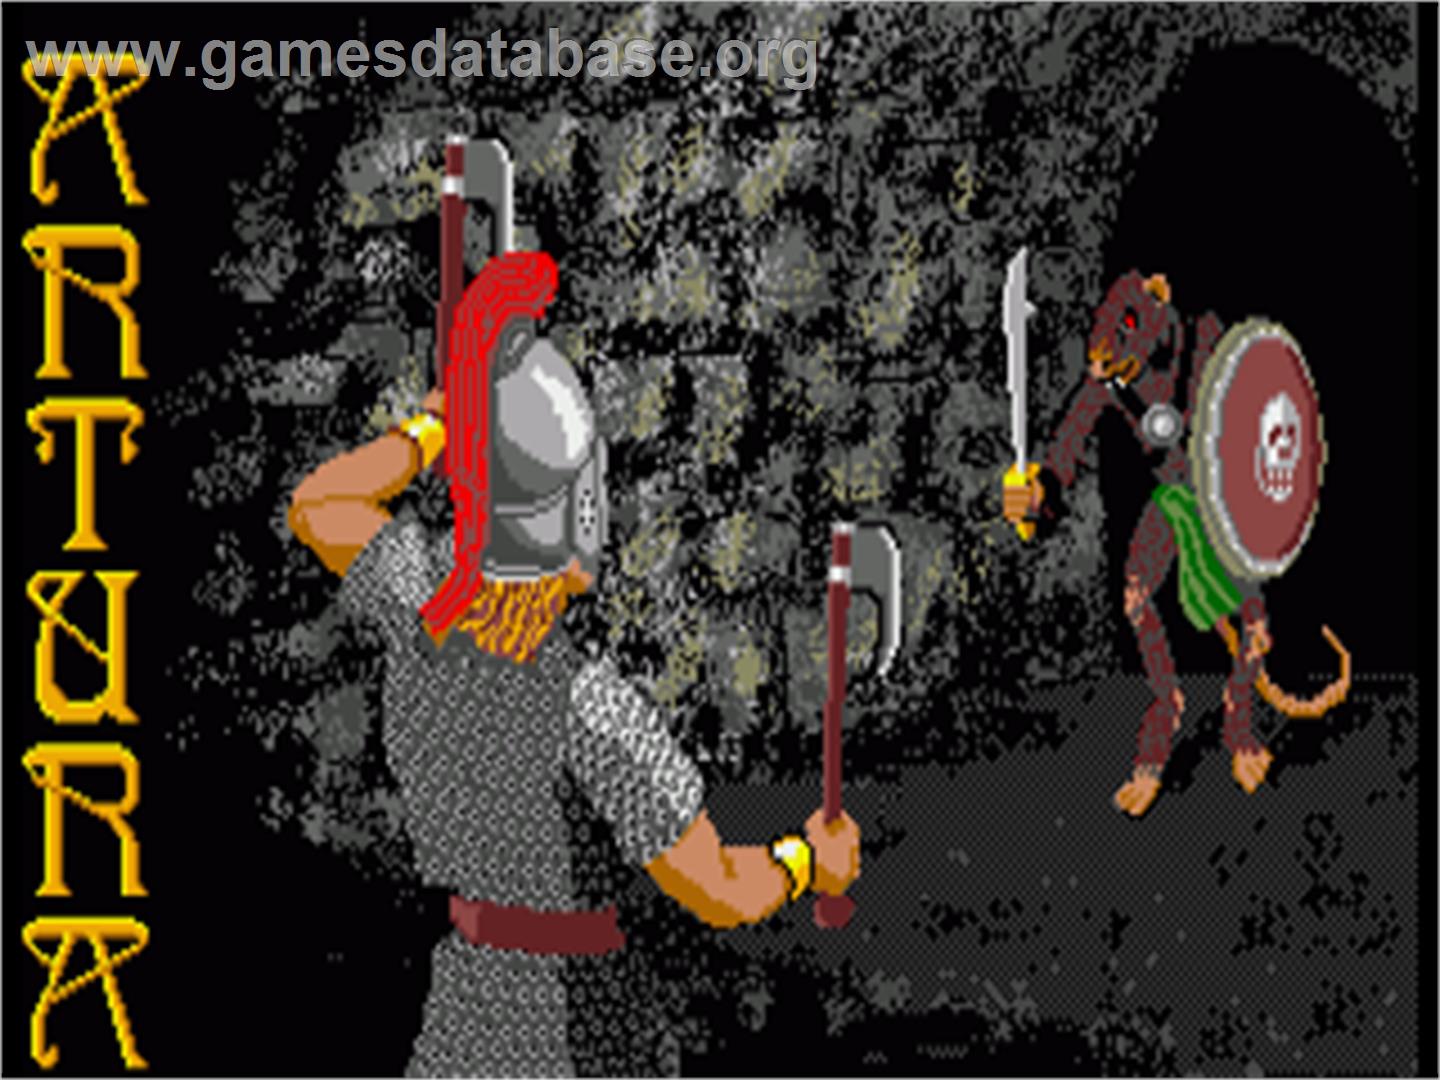 Artura - Commodore Amiga - Artwork - Title Screen